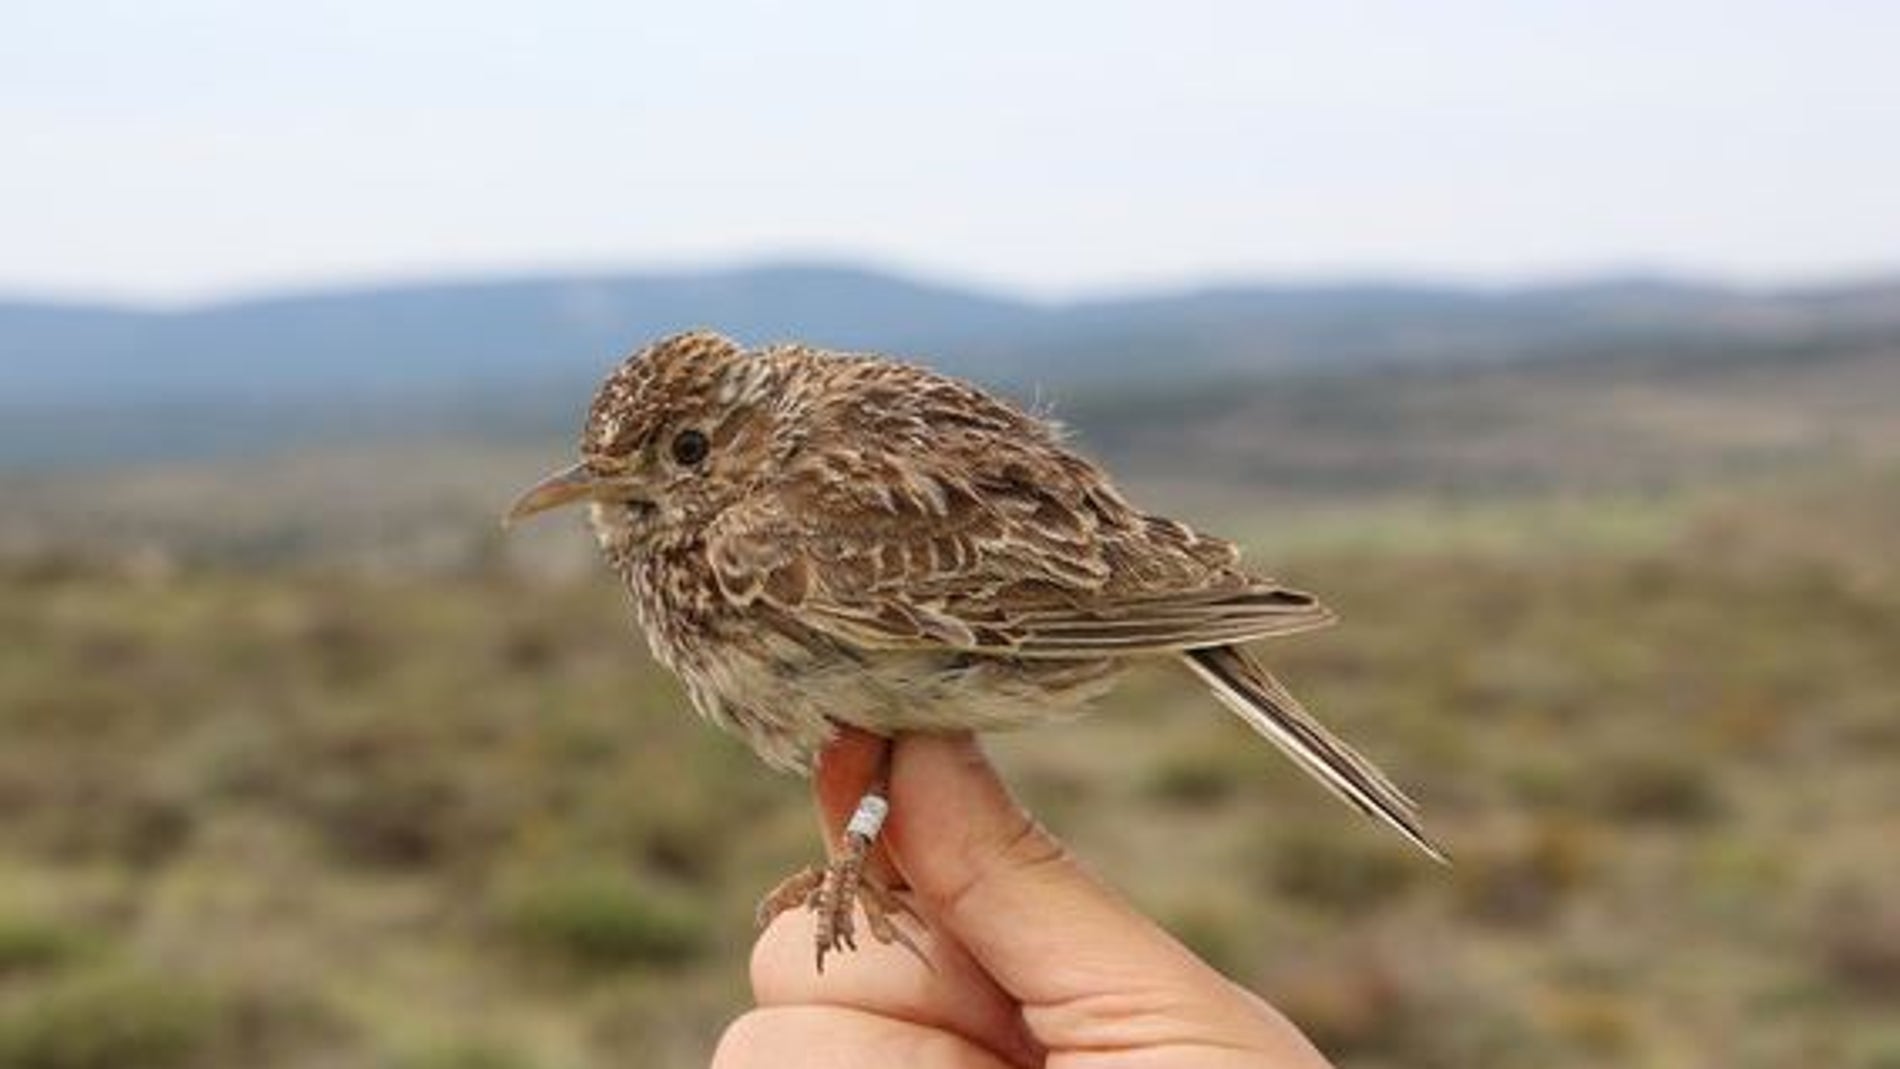 Fotografía de un ave de pequeña envergadura, sujeta mientras se muestra su anilla en la pata.